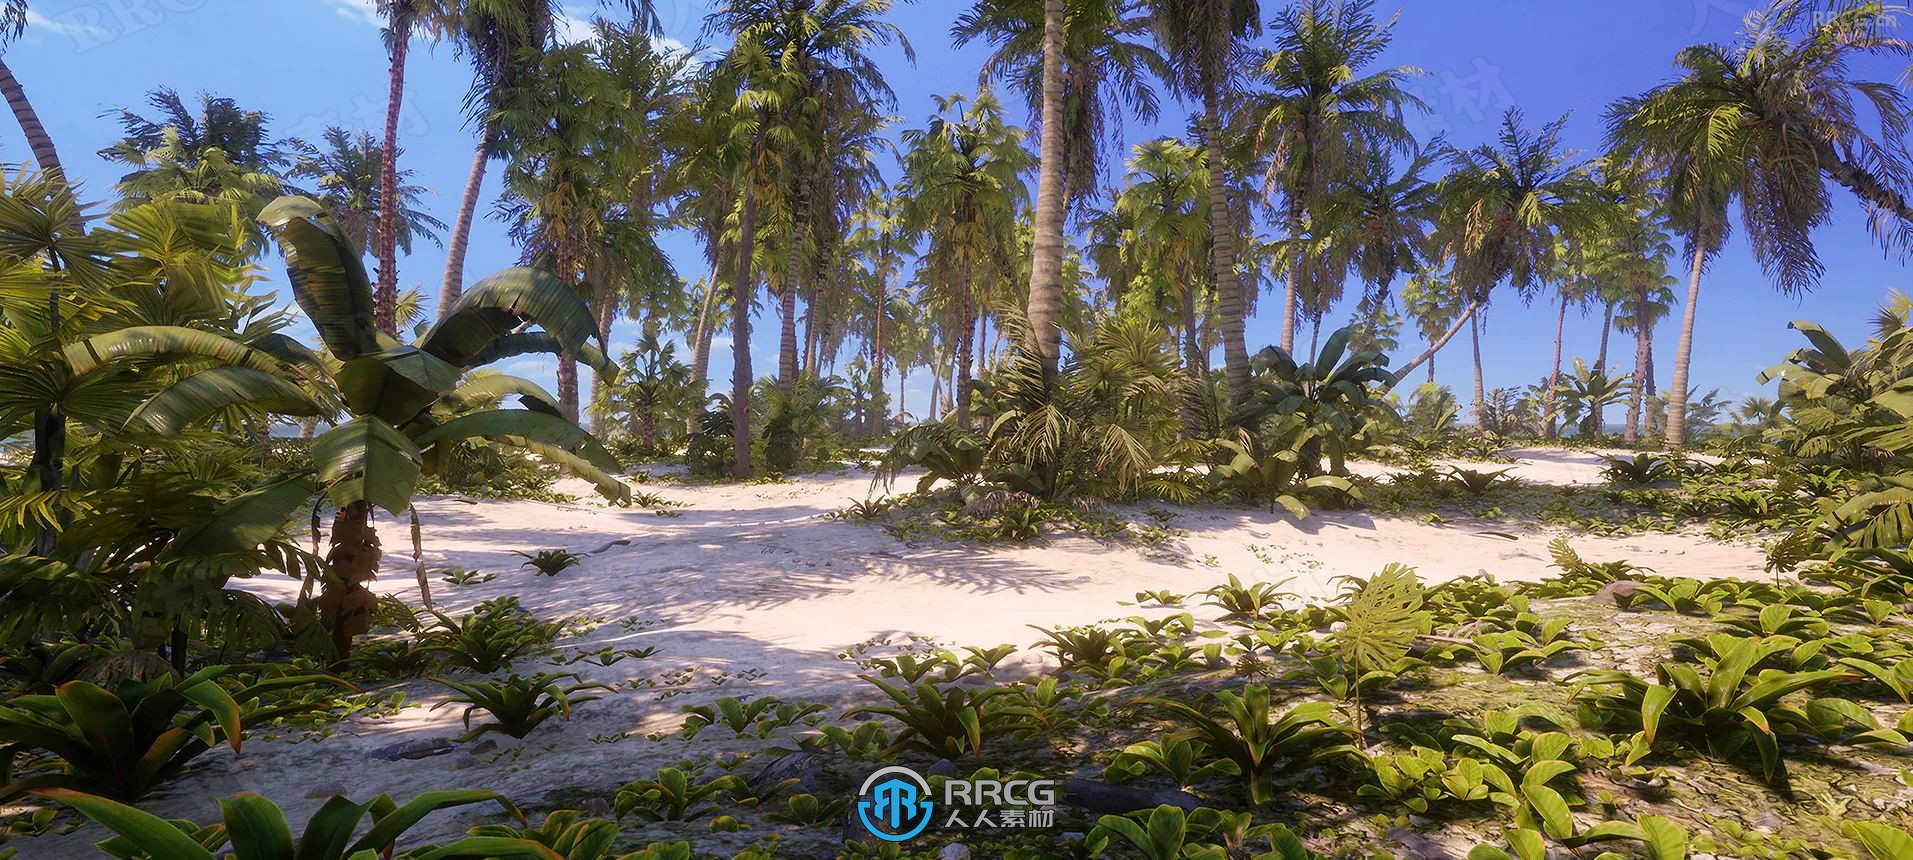 热带树木草木植物环境模型UE游戏素材